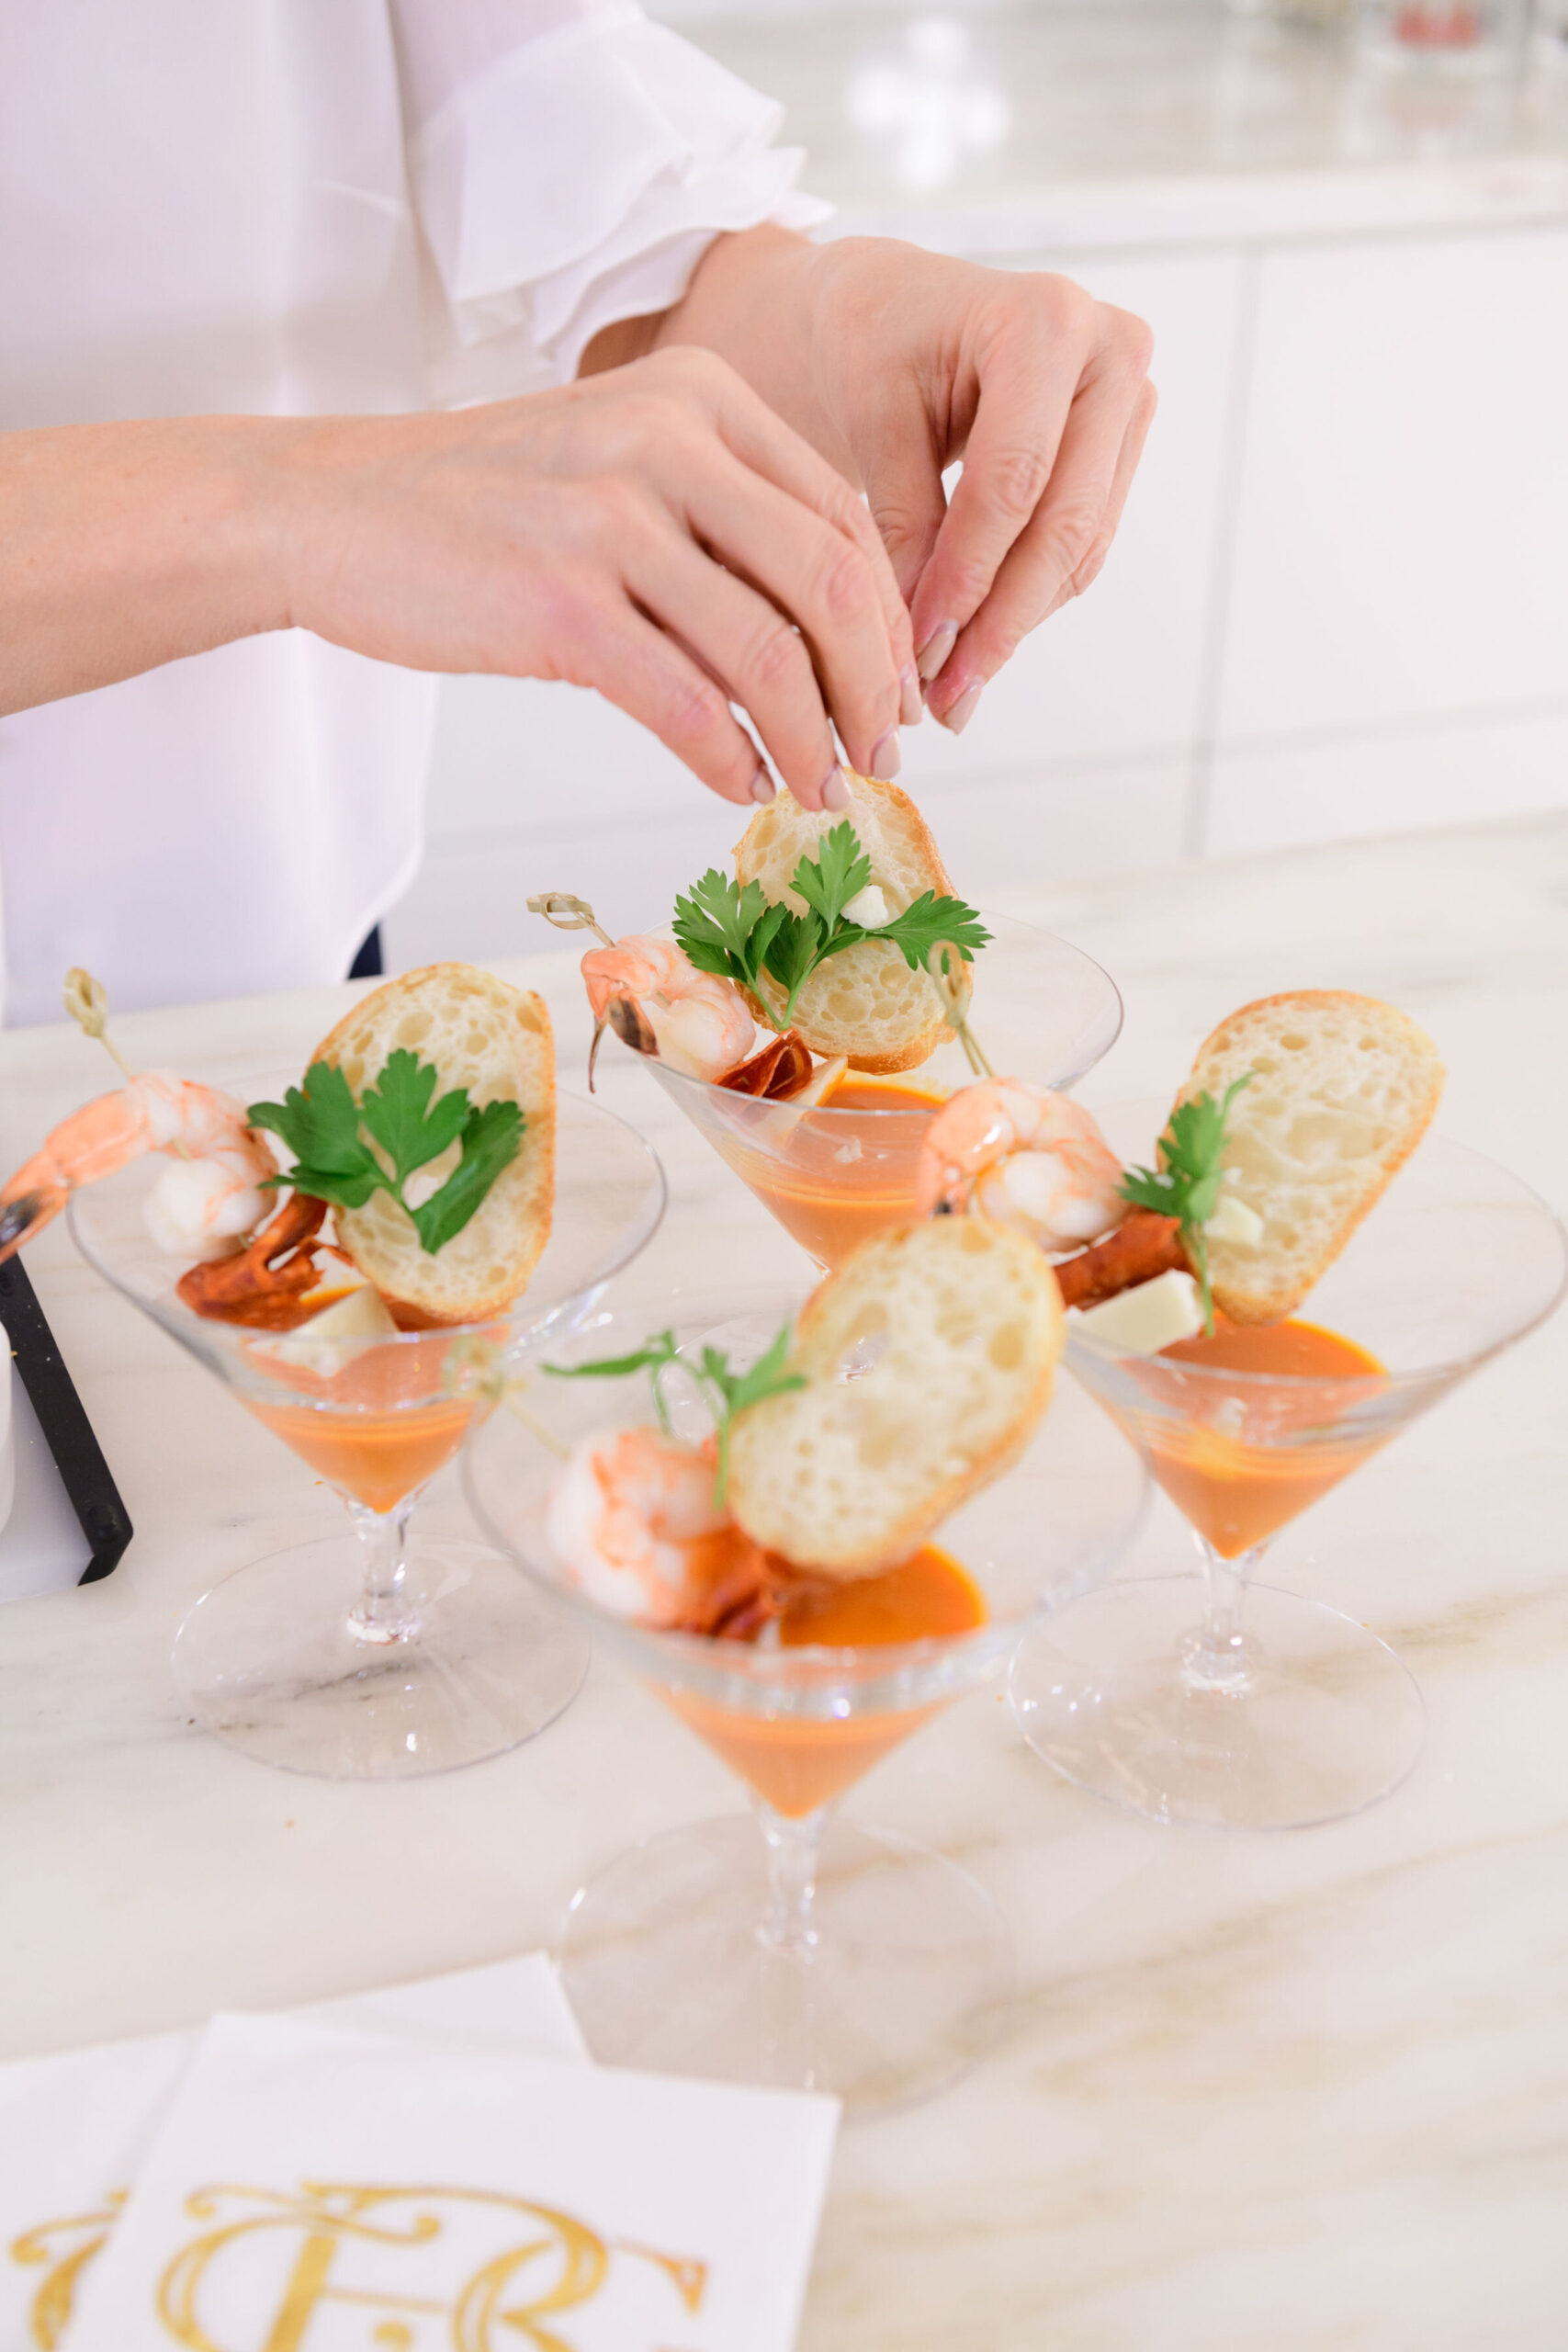 Skewered Shrimp Shooters

recipe, seafood, shrimp, shrimp shooter, spring, appetizer, martini glass, napkin